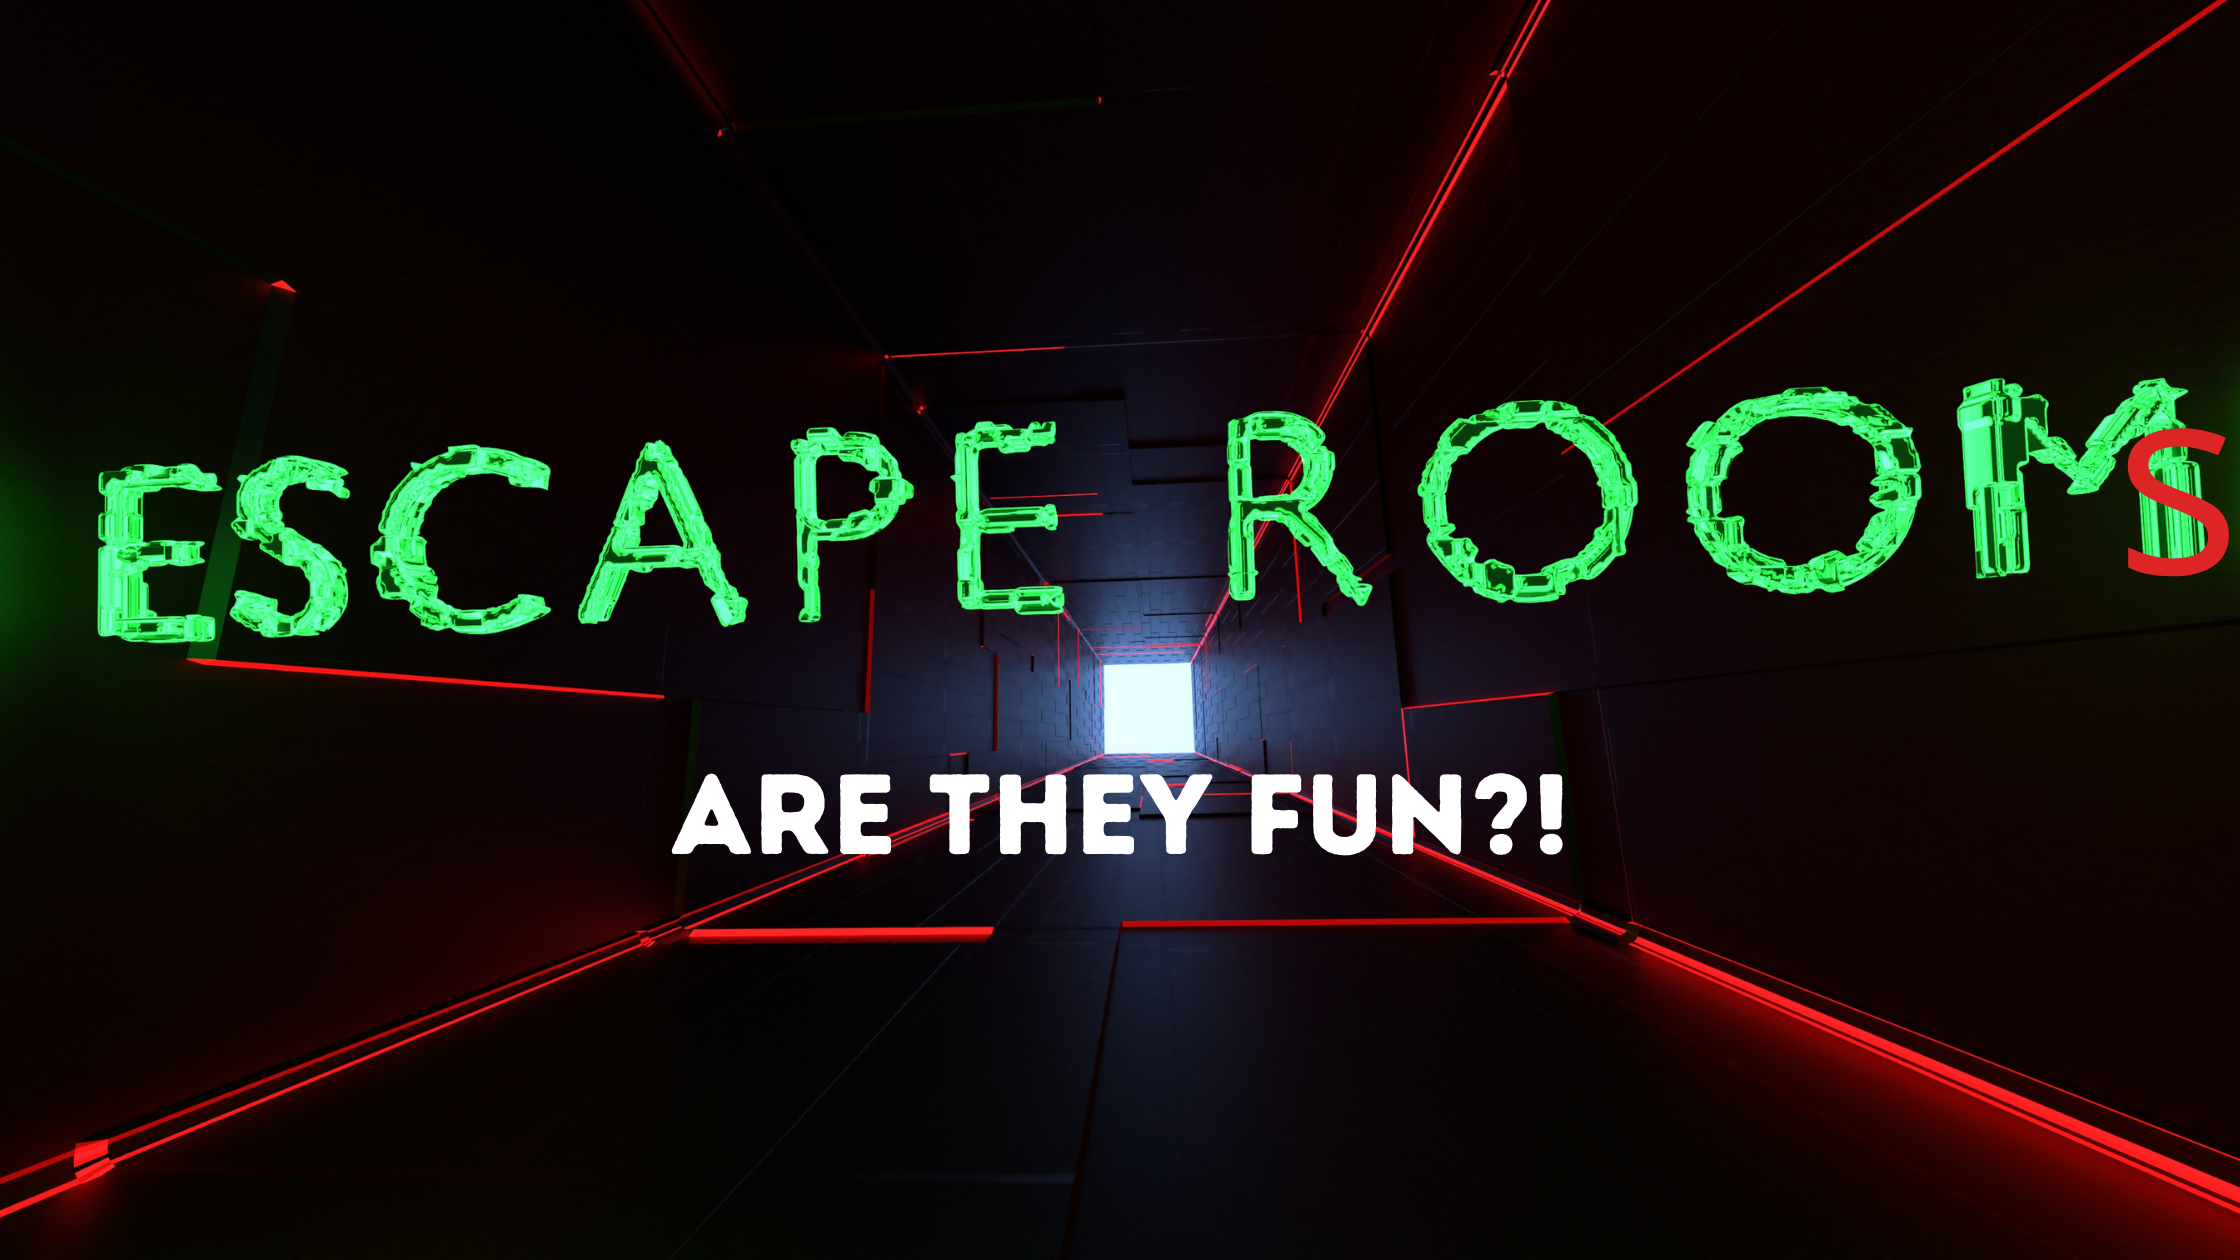 Escape Room Games - Are They Fun?